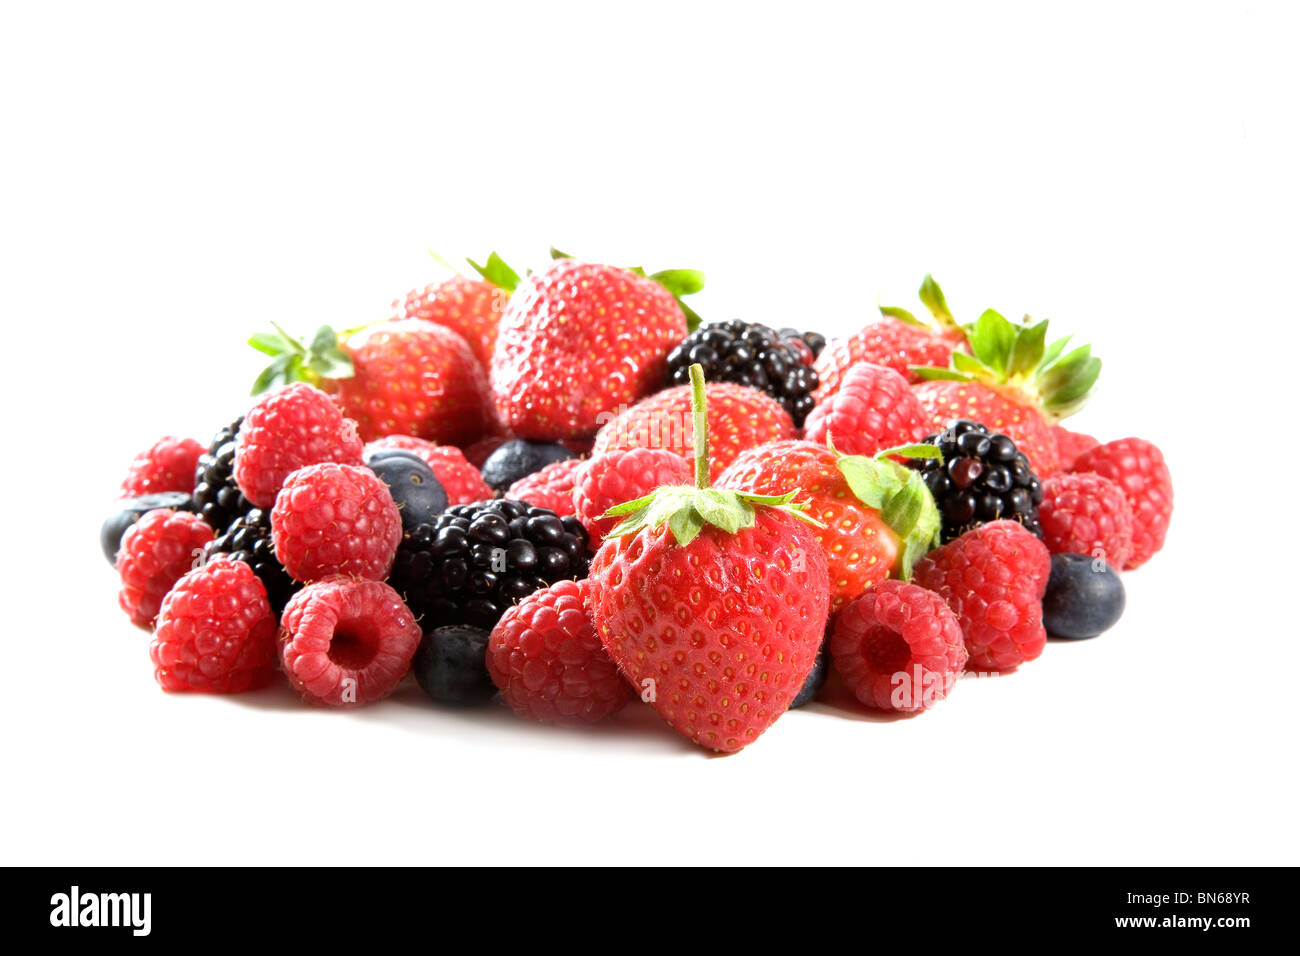 variety of berries Stock Photo